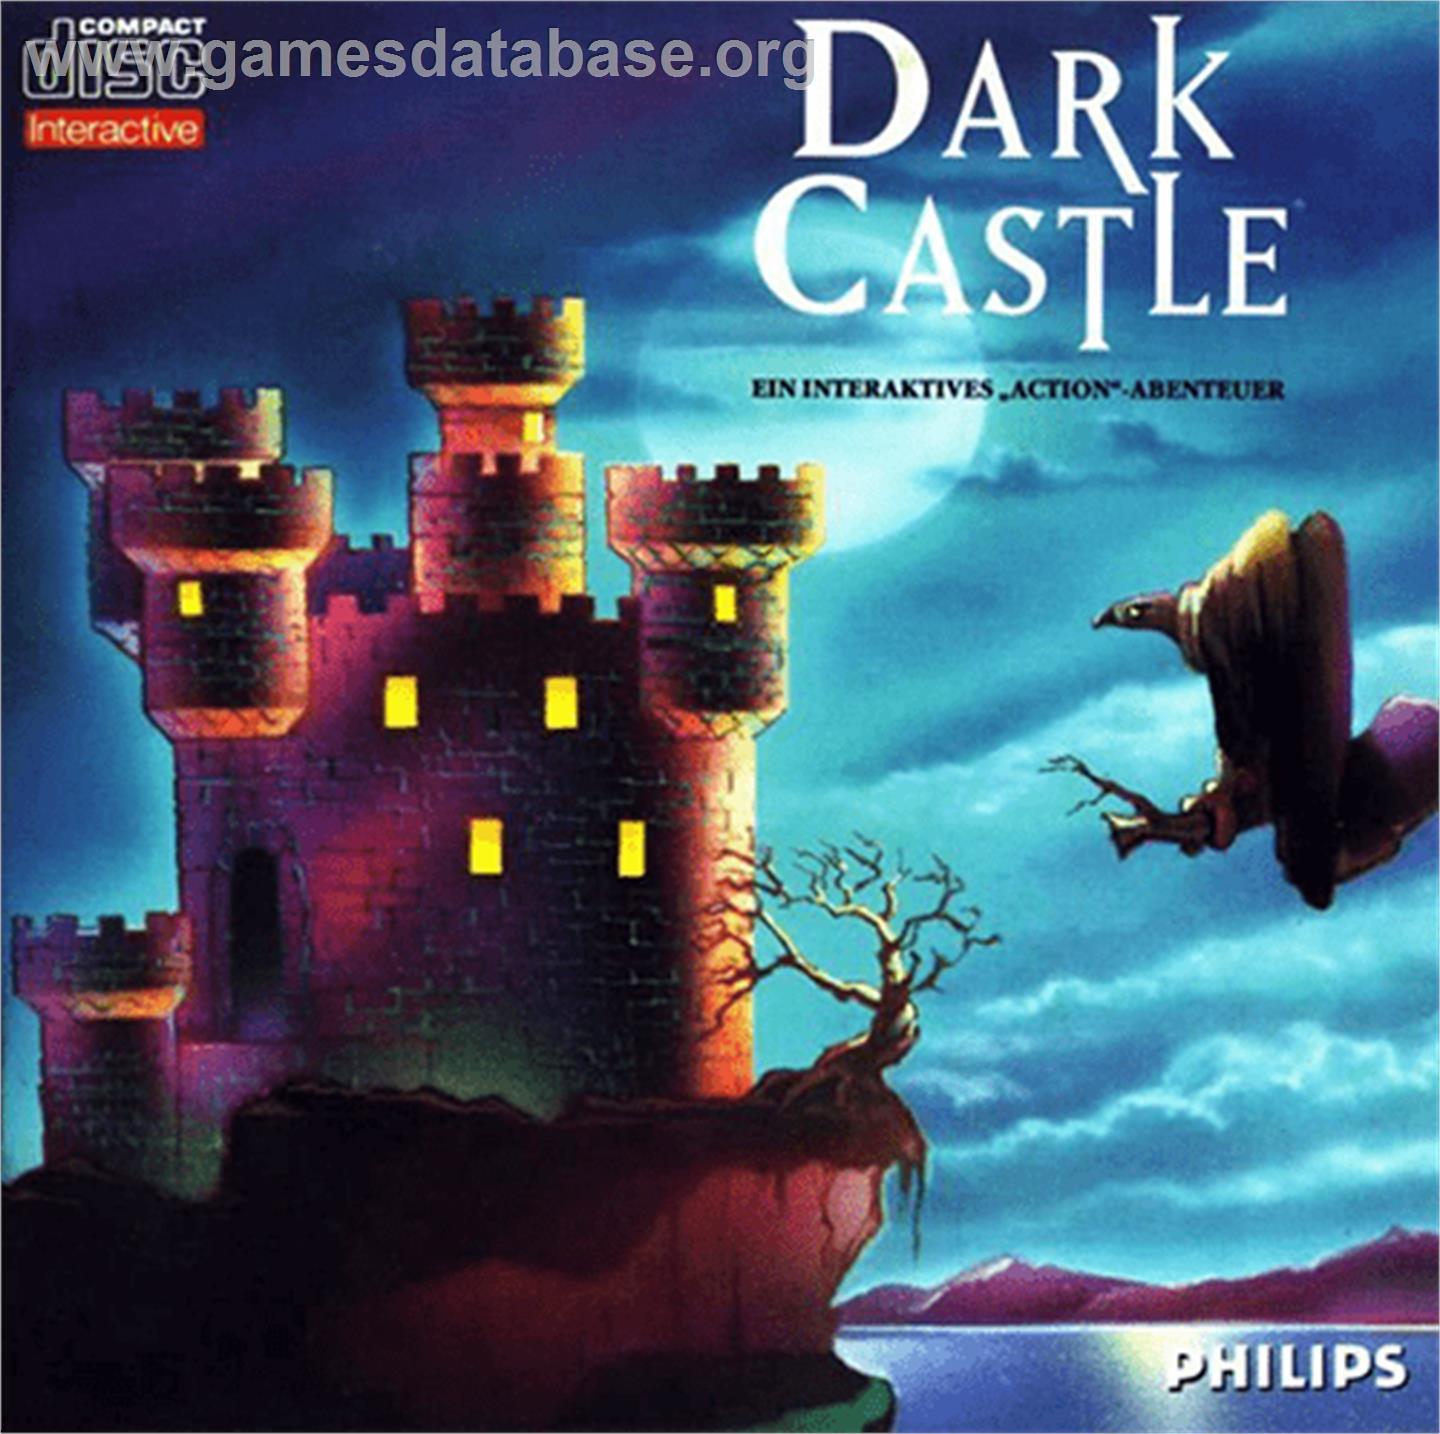 Dark Castle - Philips CD-i - Artwork - Box